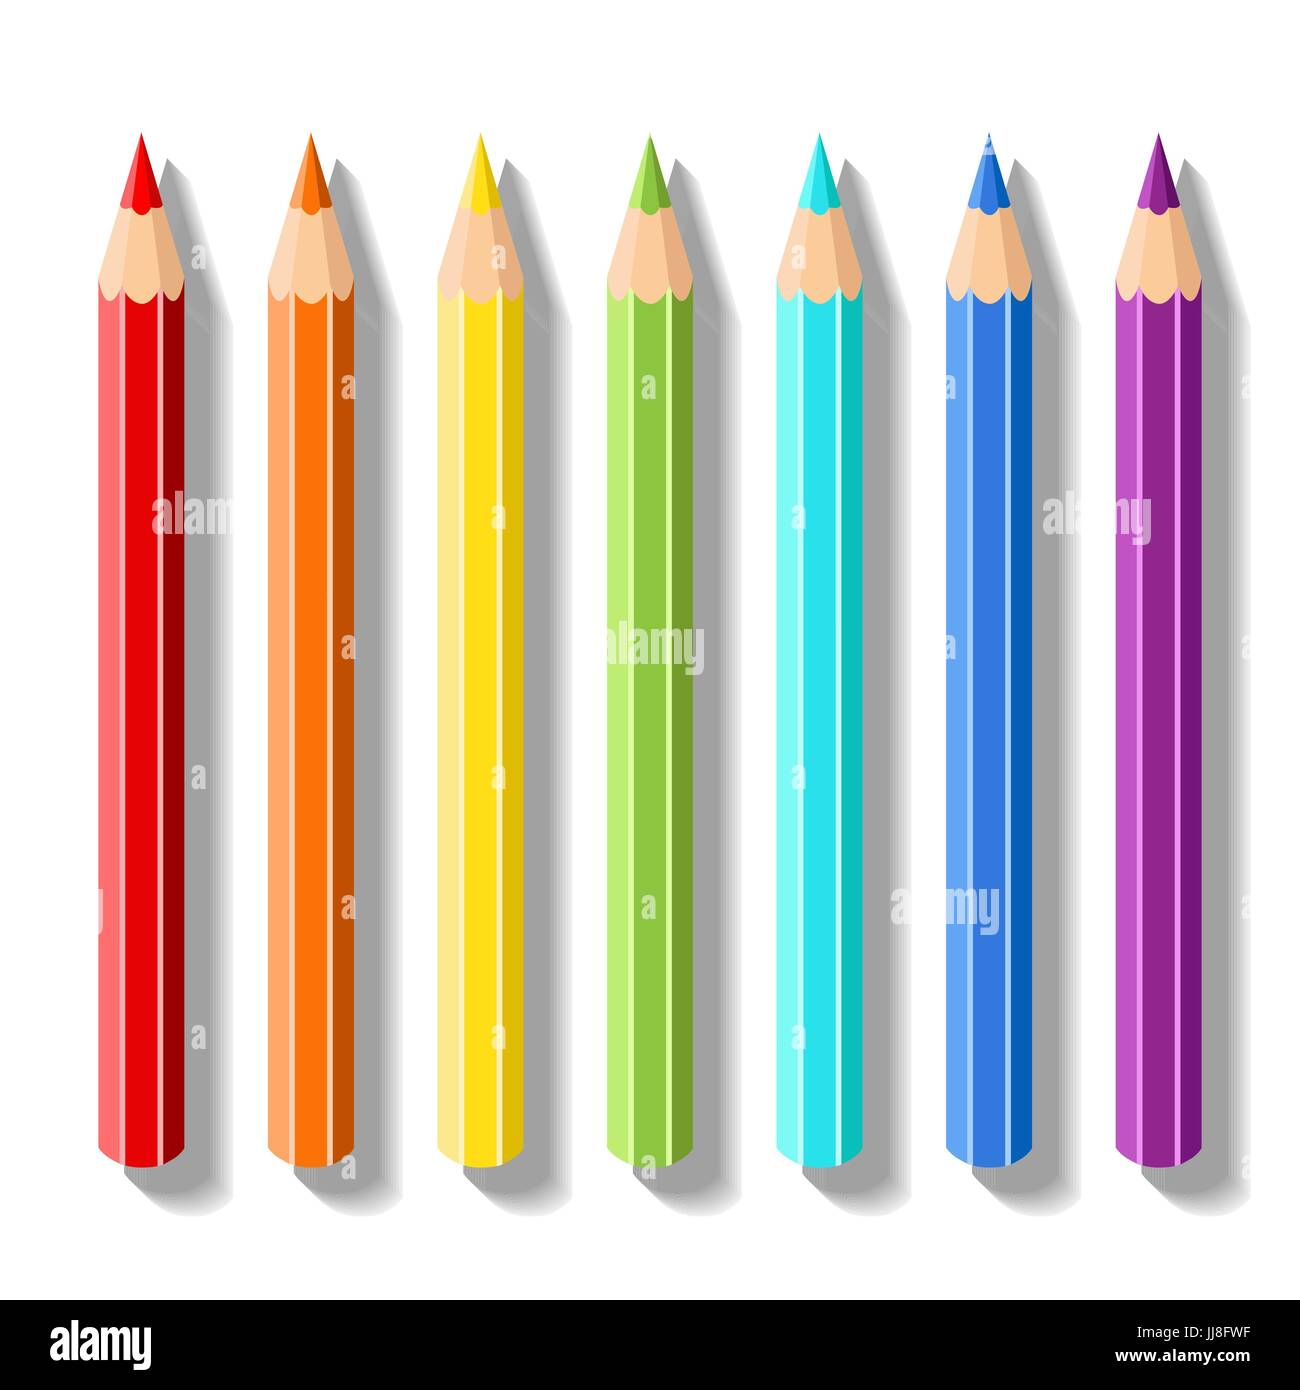 Setzen Sie realistische Buntstifte. Bleistifte der Farben des Regenbogens. Vektor-Malbedarf Zeichenbedarf für Zeichnung, zeichnen, Grafik, Malerei und Kreativität Stock Vektor